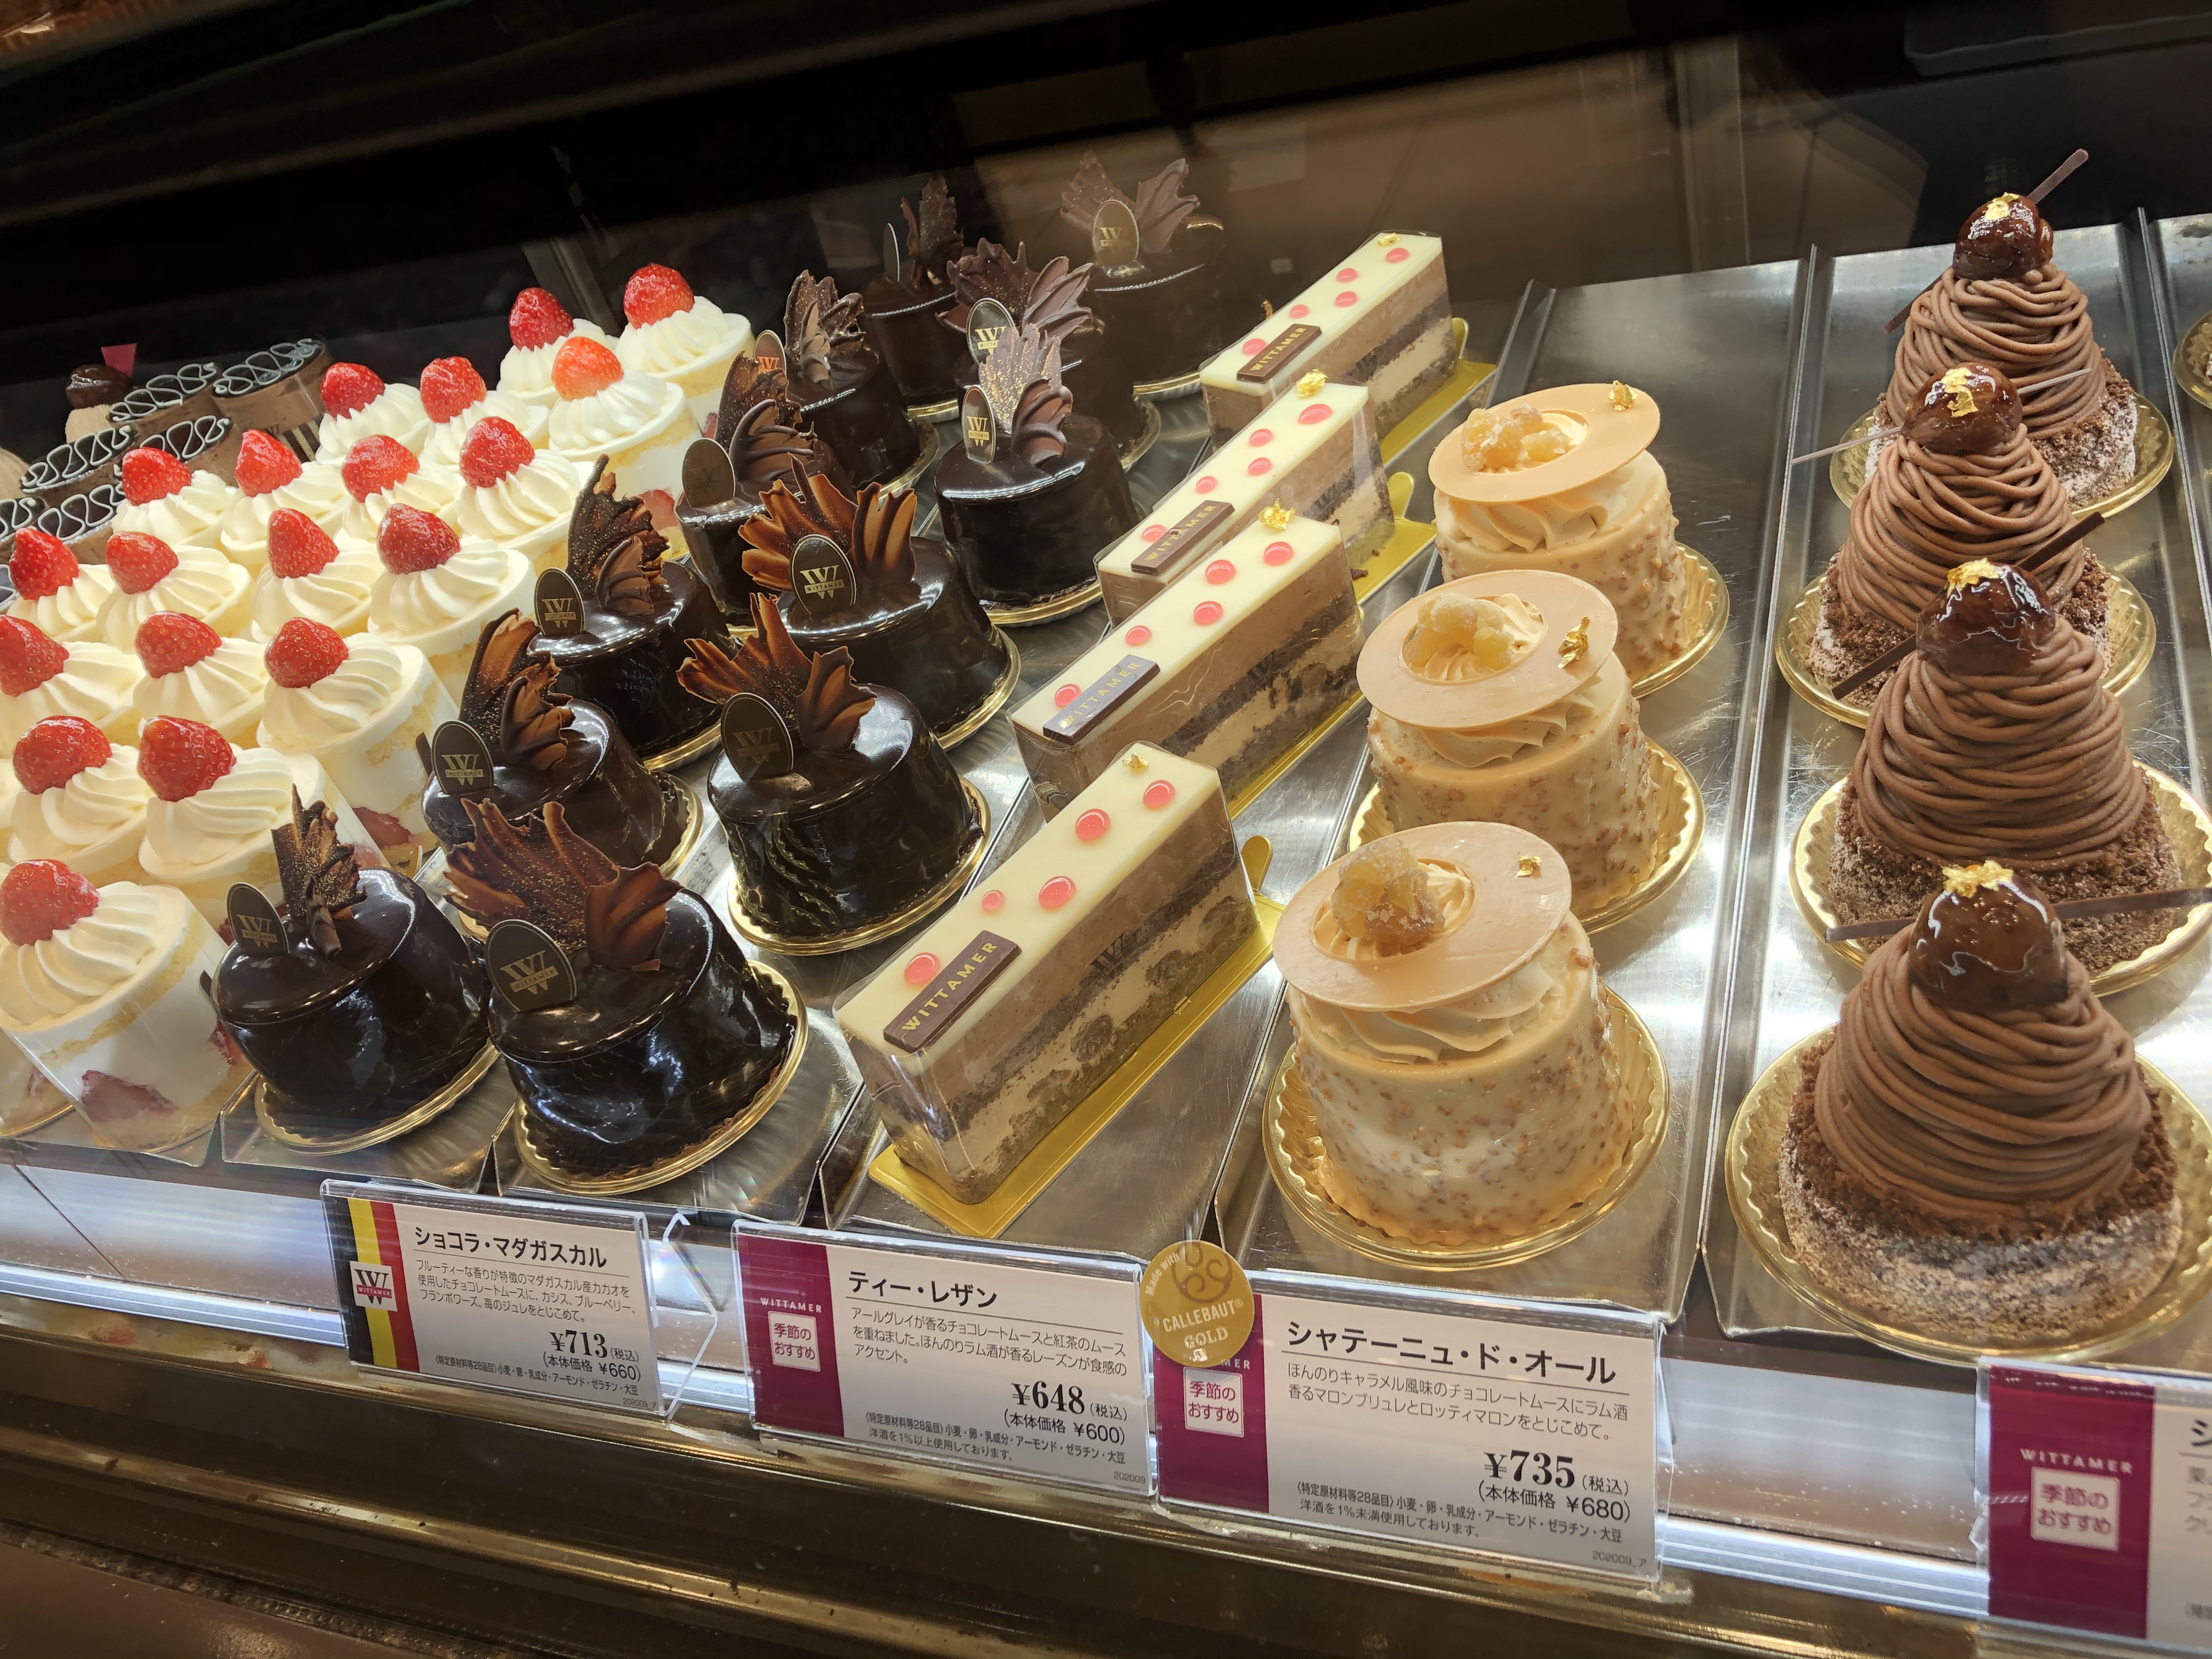 Cocofemmefatale ヴィタメールのケーキ あべのハルカスにて 阪神梅田百貨店に1号店 ができた時から大好きなチョコ ケーキ屋さん チョコ関連だけでなくフルーツ系のケーキも絶品で美味しい T Co 2au08yqnb2 Twitter